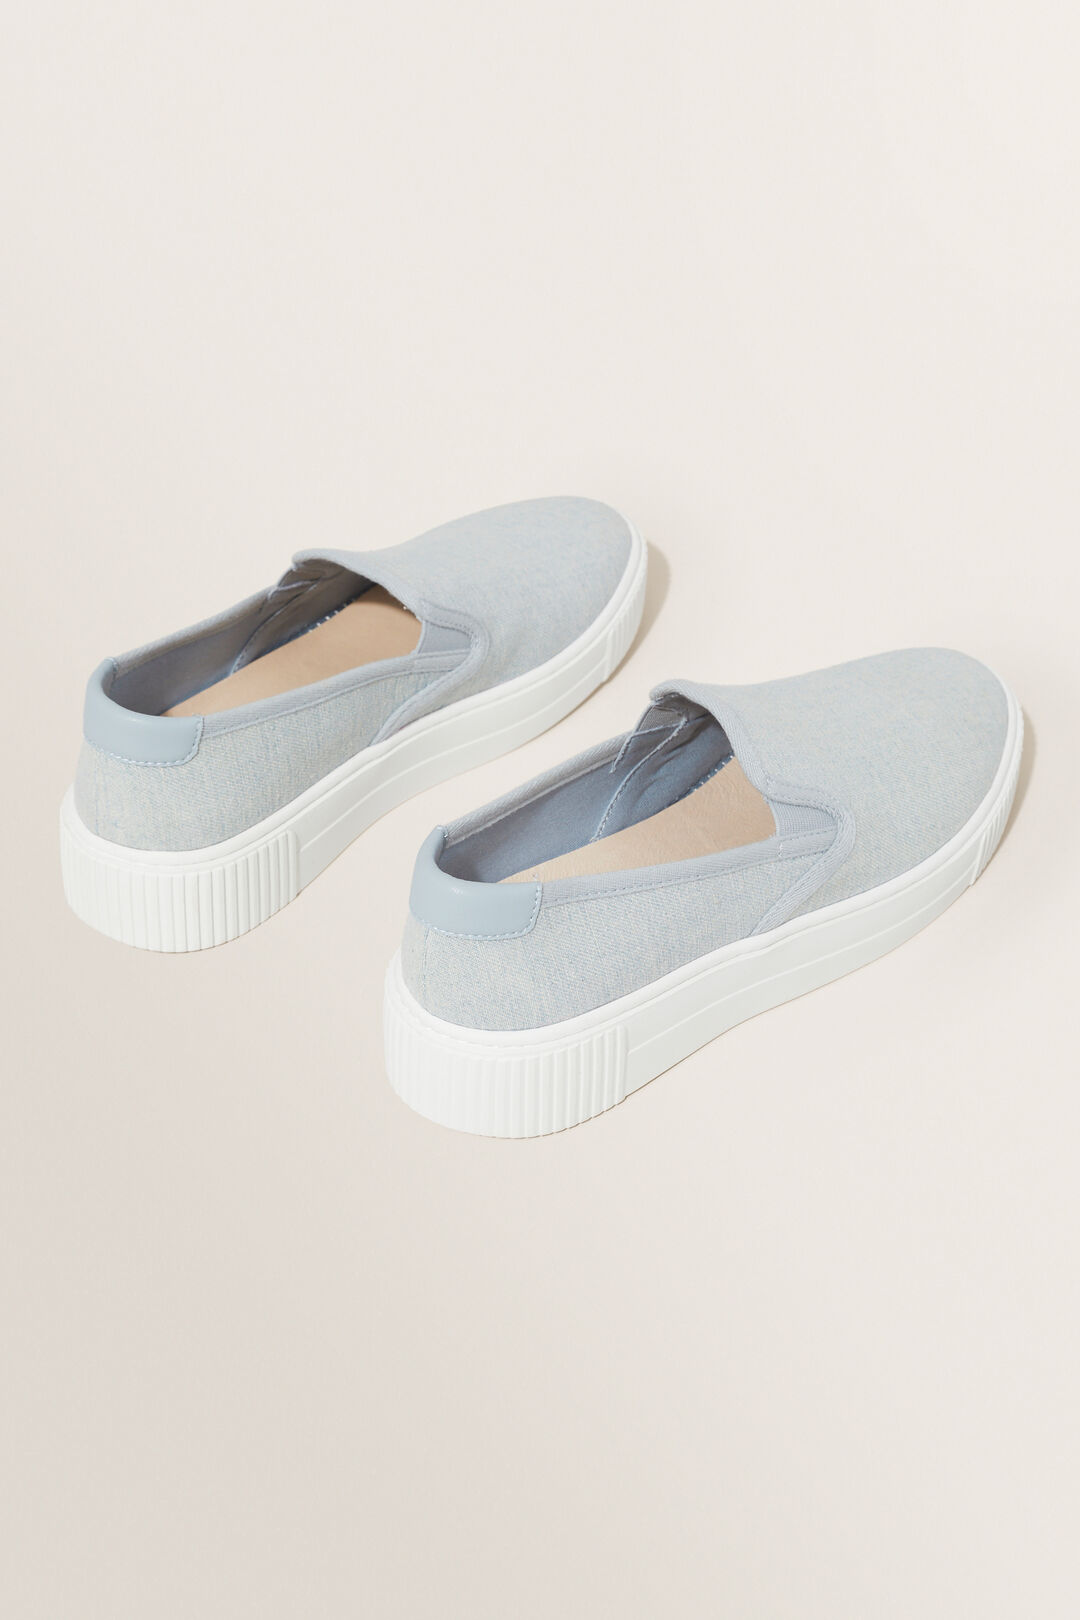 Zoey Slip On Sneaker  Pale Blue Wash  hi-res